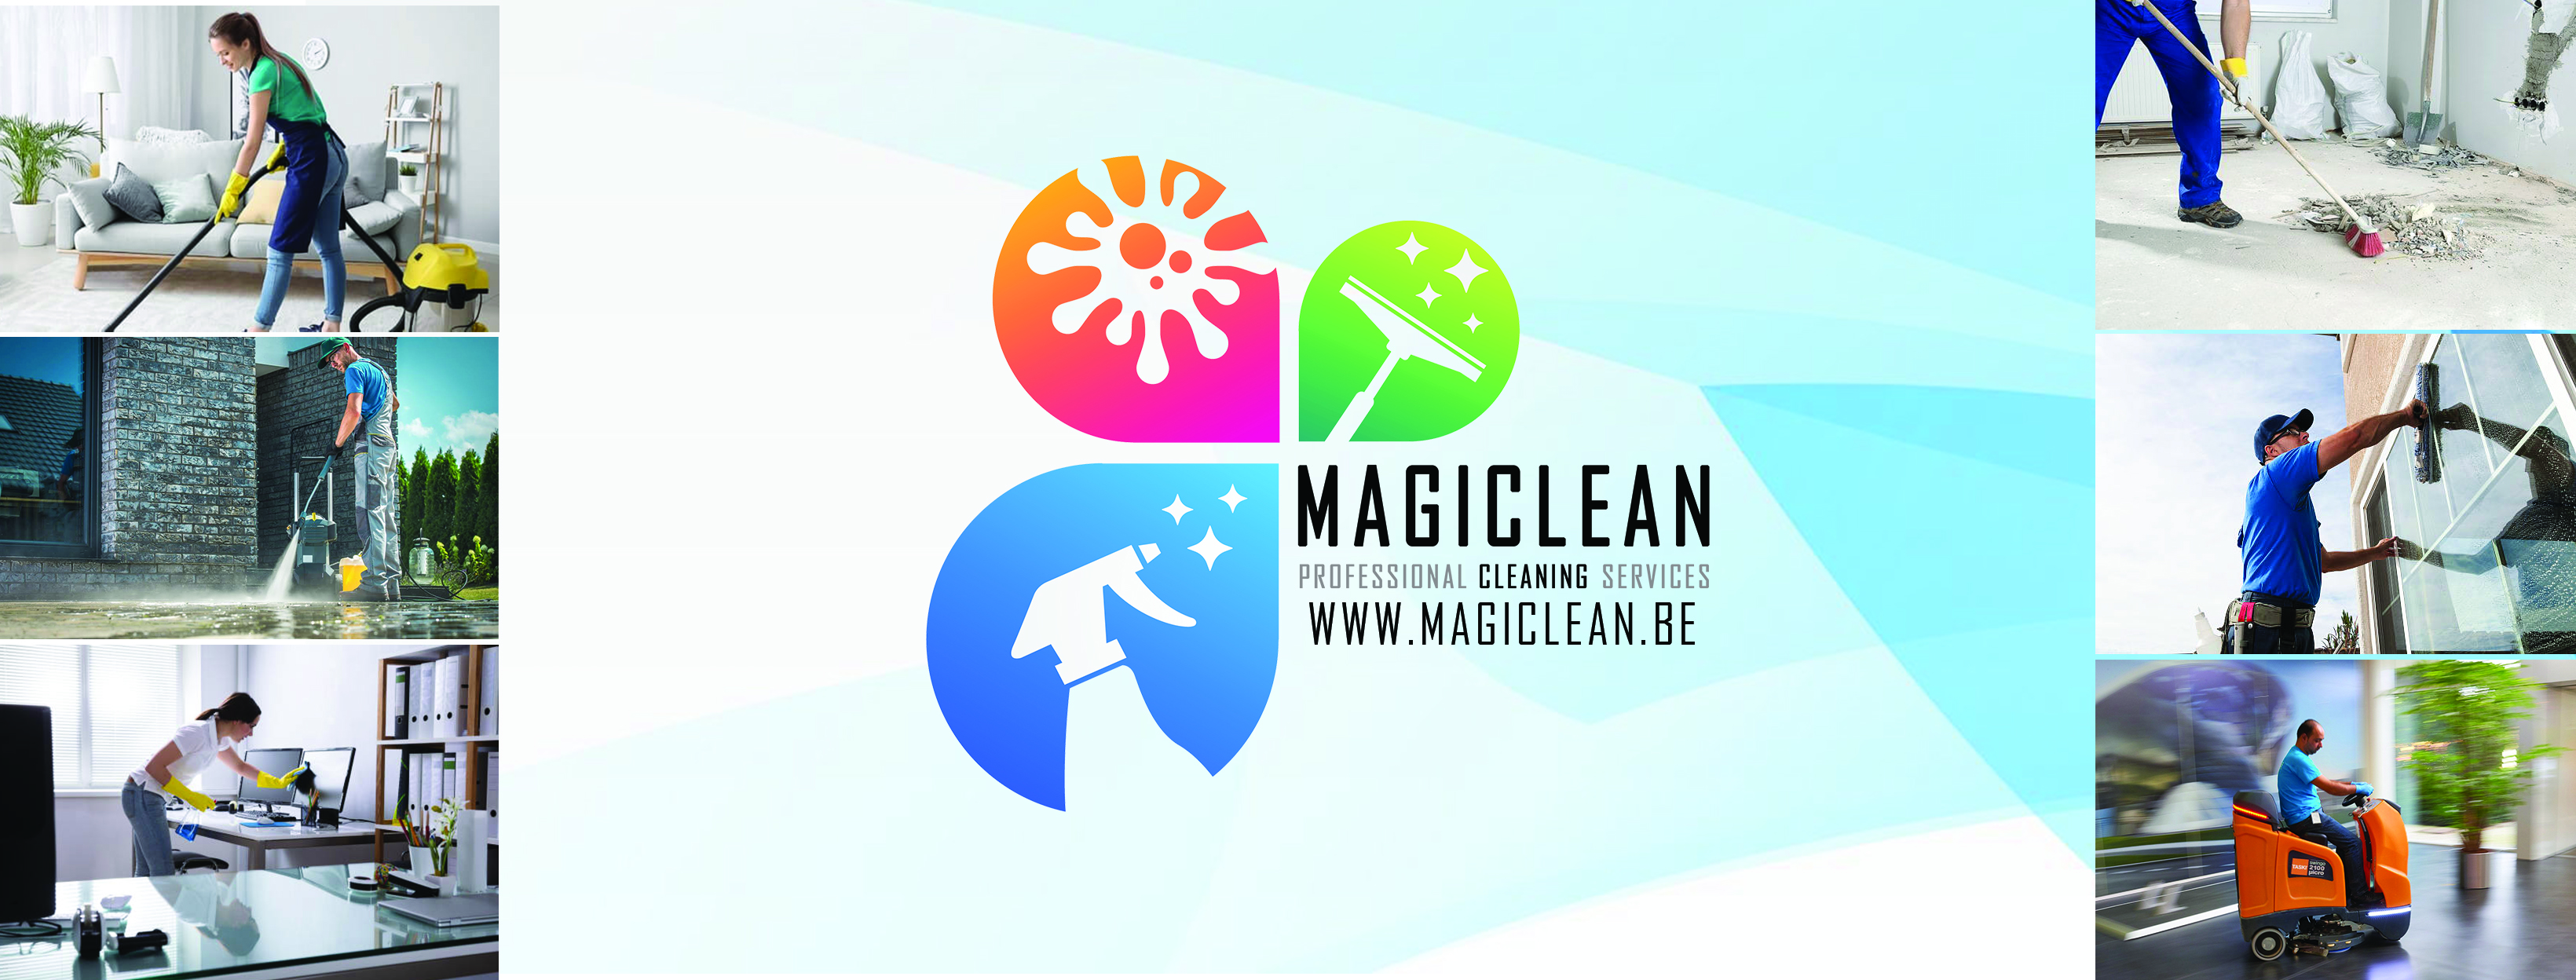 schoonmaakbedrijven Merksem Magiclean - Professional Cleaning Services